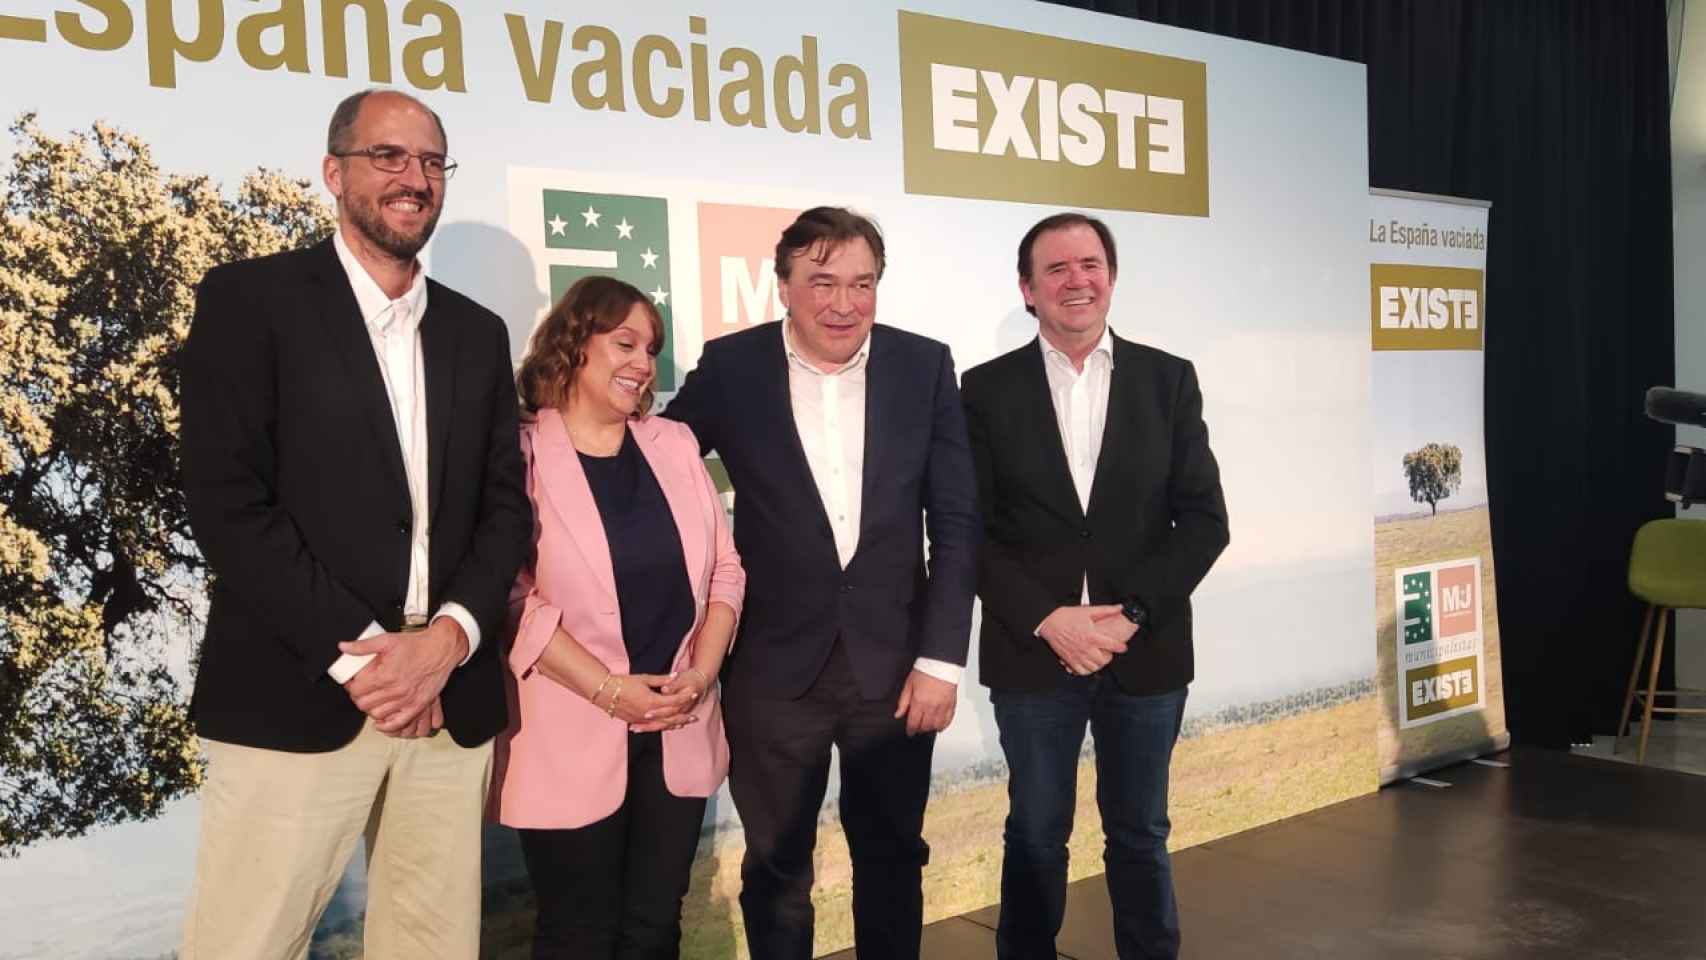 La España vaciada presenta su candidatura europea poniendo el foco en la política agraria